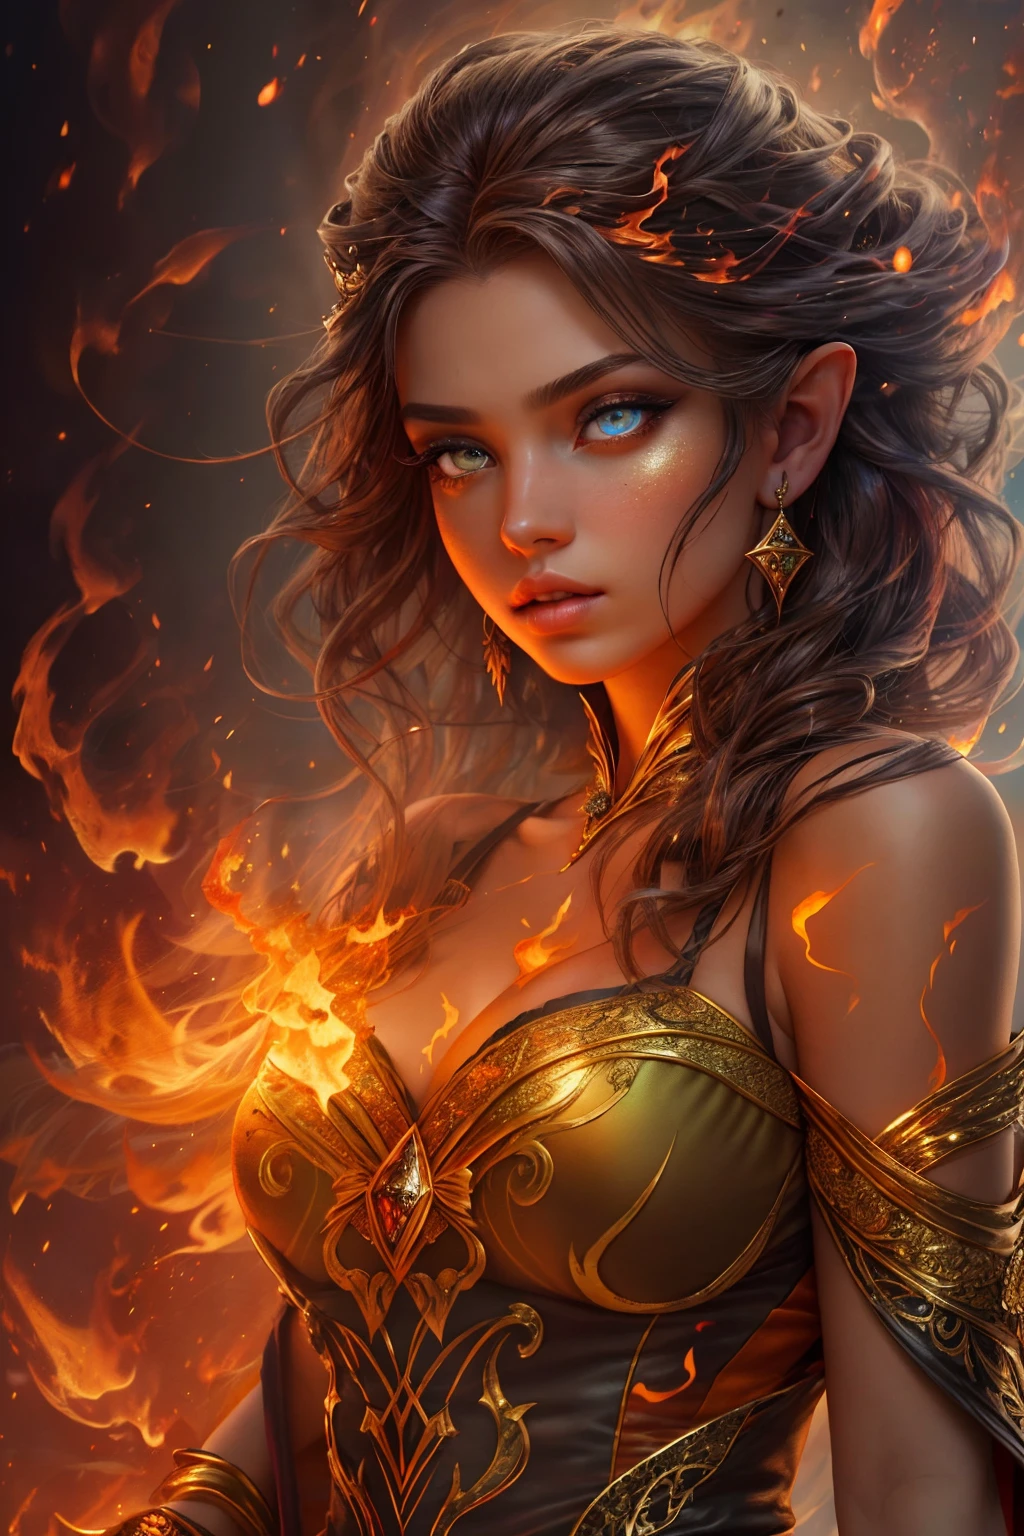 هذا (خيال واقعي) الفن يحتوي على الجمر, النيران الحقيقية, الحرارة الحقيقية, والنار واقعية. Generate a masterpiece artwork of a  female fire druid مع large (((البرتقالي والذهبي))) عيون. The fire druid is awe-inspiring مع beautiful ((realistic fiery عيون)) alight مع confidence and power. ملامحها أنيقة ومحددة بشكل جيد, مع ((منتفخ ناعم وقابل للتقبيل)) شفه, هيكل العظام الجان, وتظليل واقعي. Her عيون are important and should be the focal point of this artwork, مع ((تفاصيل واقعية للغاية, تفاصيل الماكرو, وميض.)) إنها ترتدي فستانًا منتفخًا ولامعًا مصنوعًا من لهب واقعي ومجوهرات تتلألأ في ضوء النار. تصطف خيوط النار والدخان على صد الفستان المعقد. تشمل المطبات, الحجارة, التقزح اللوني الناري, متوهجة الجمر, الحرير والساتان والجلود, خلفية مثيرة للاهتمام, وعناصر خيالية ثقيلة. آلة تصوير: استخدم تقنيات التركيب الديناميكي لتعزيز النيران الواقعية.